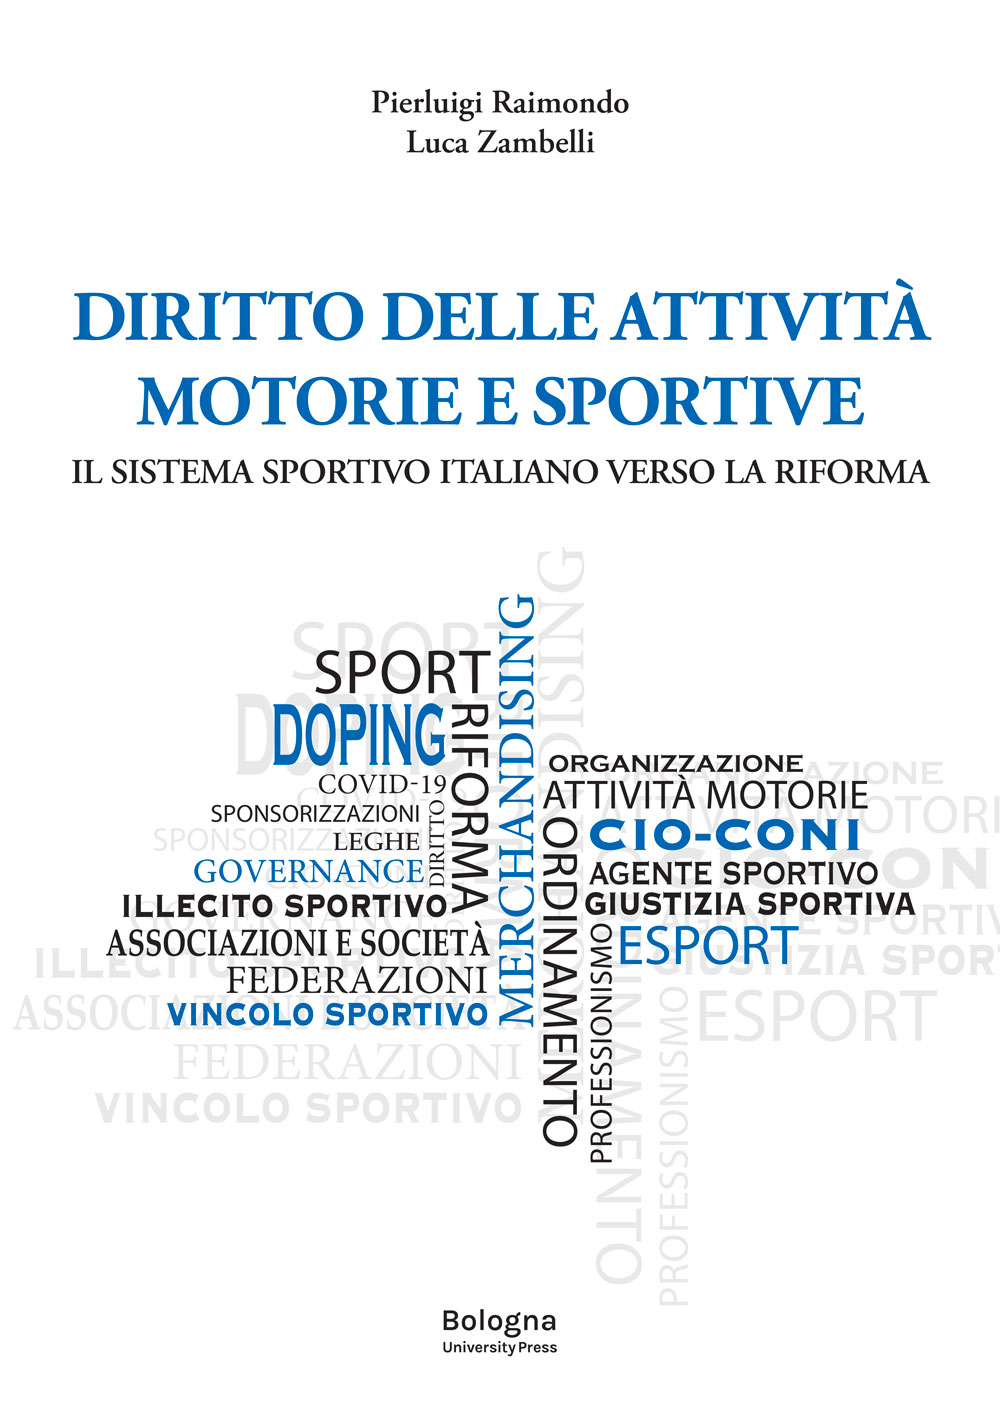 DIRITTO DELLE ATTIVITÀ MOTORIE E SPORTIVE - Bologna University Press